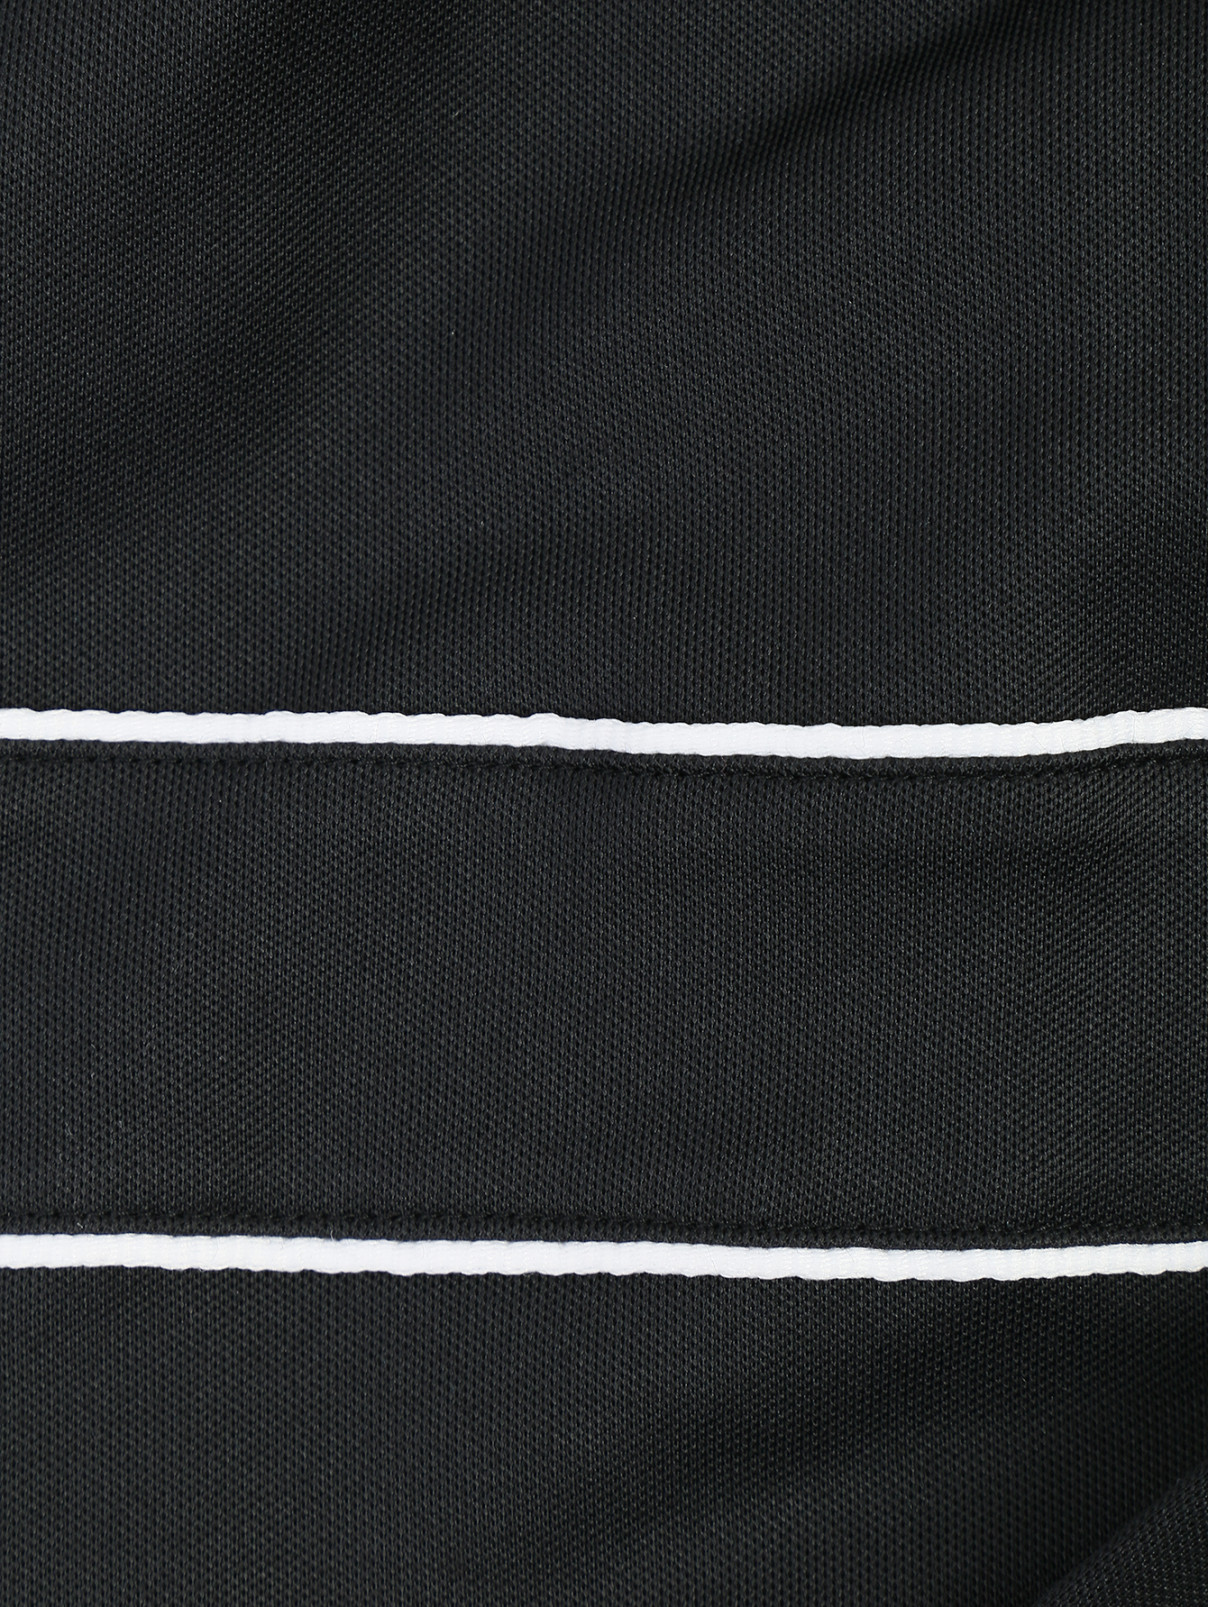 куртка на молнии с брелком Dondup  –  Деталь  – Цвет:  Черный